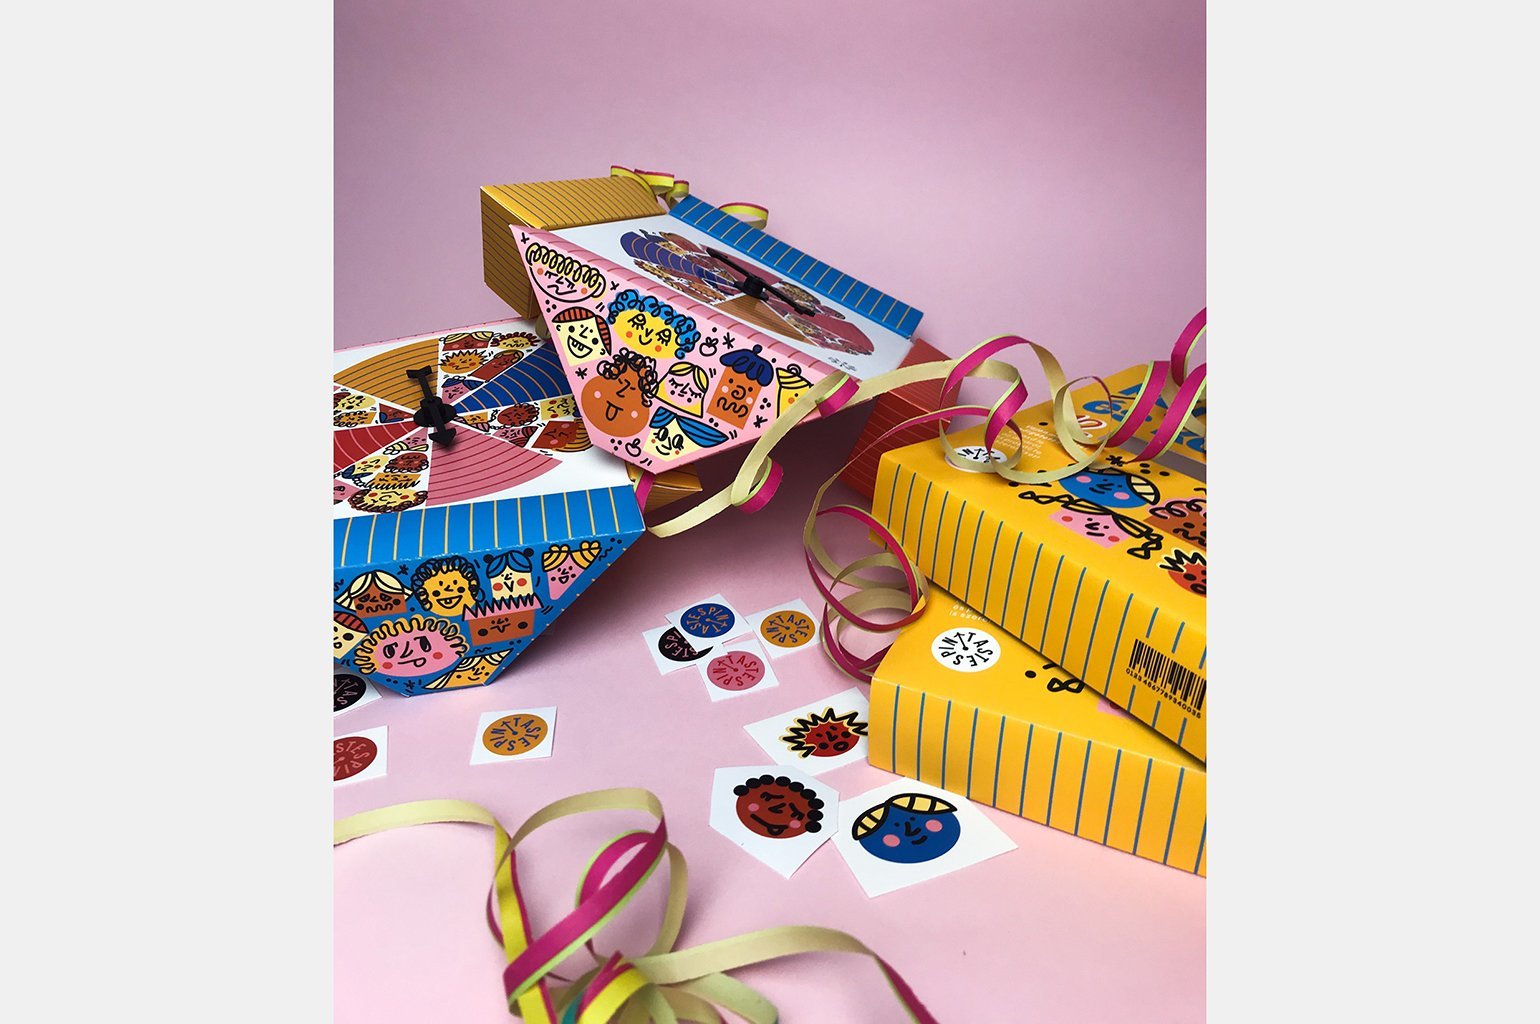 Дизайн упаковки конфет. Коробка состоит из четырёх треугольников, в которых лежат конфеты разного вкуса. Внутри коробки лежат наклейки